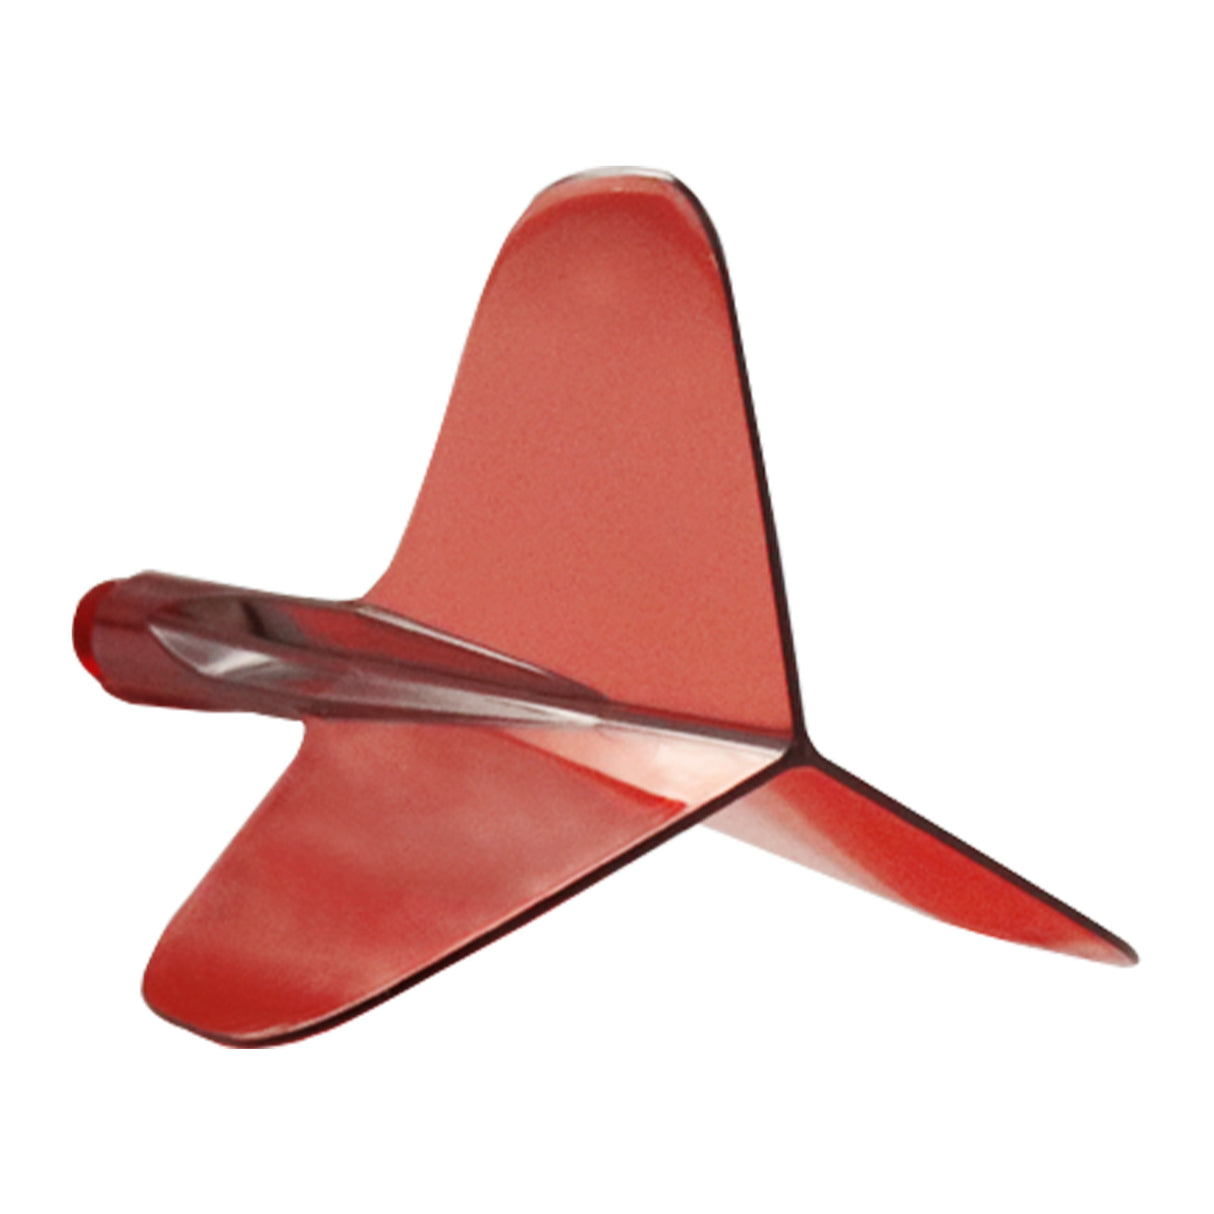 Condor AXE 120 Dart Flights - Standard - Clear Red